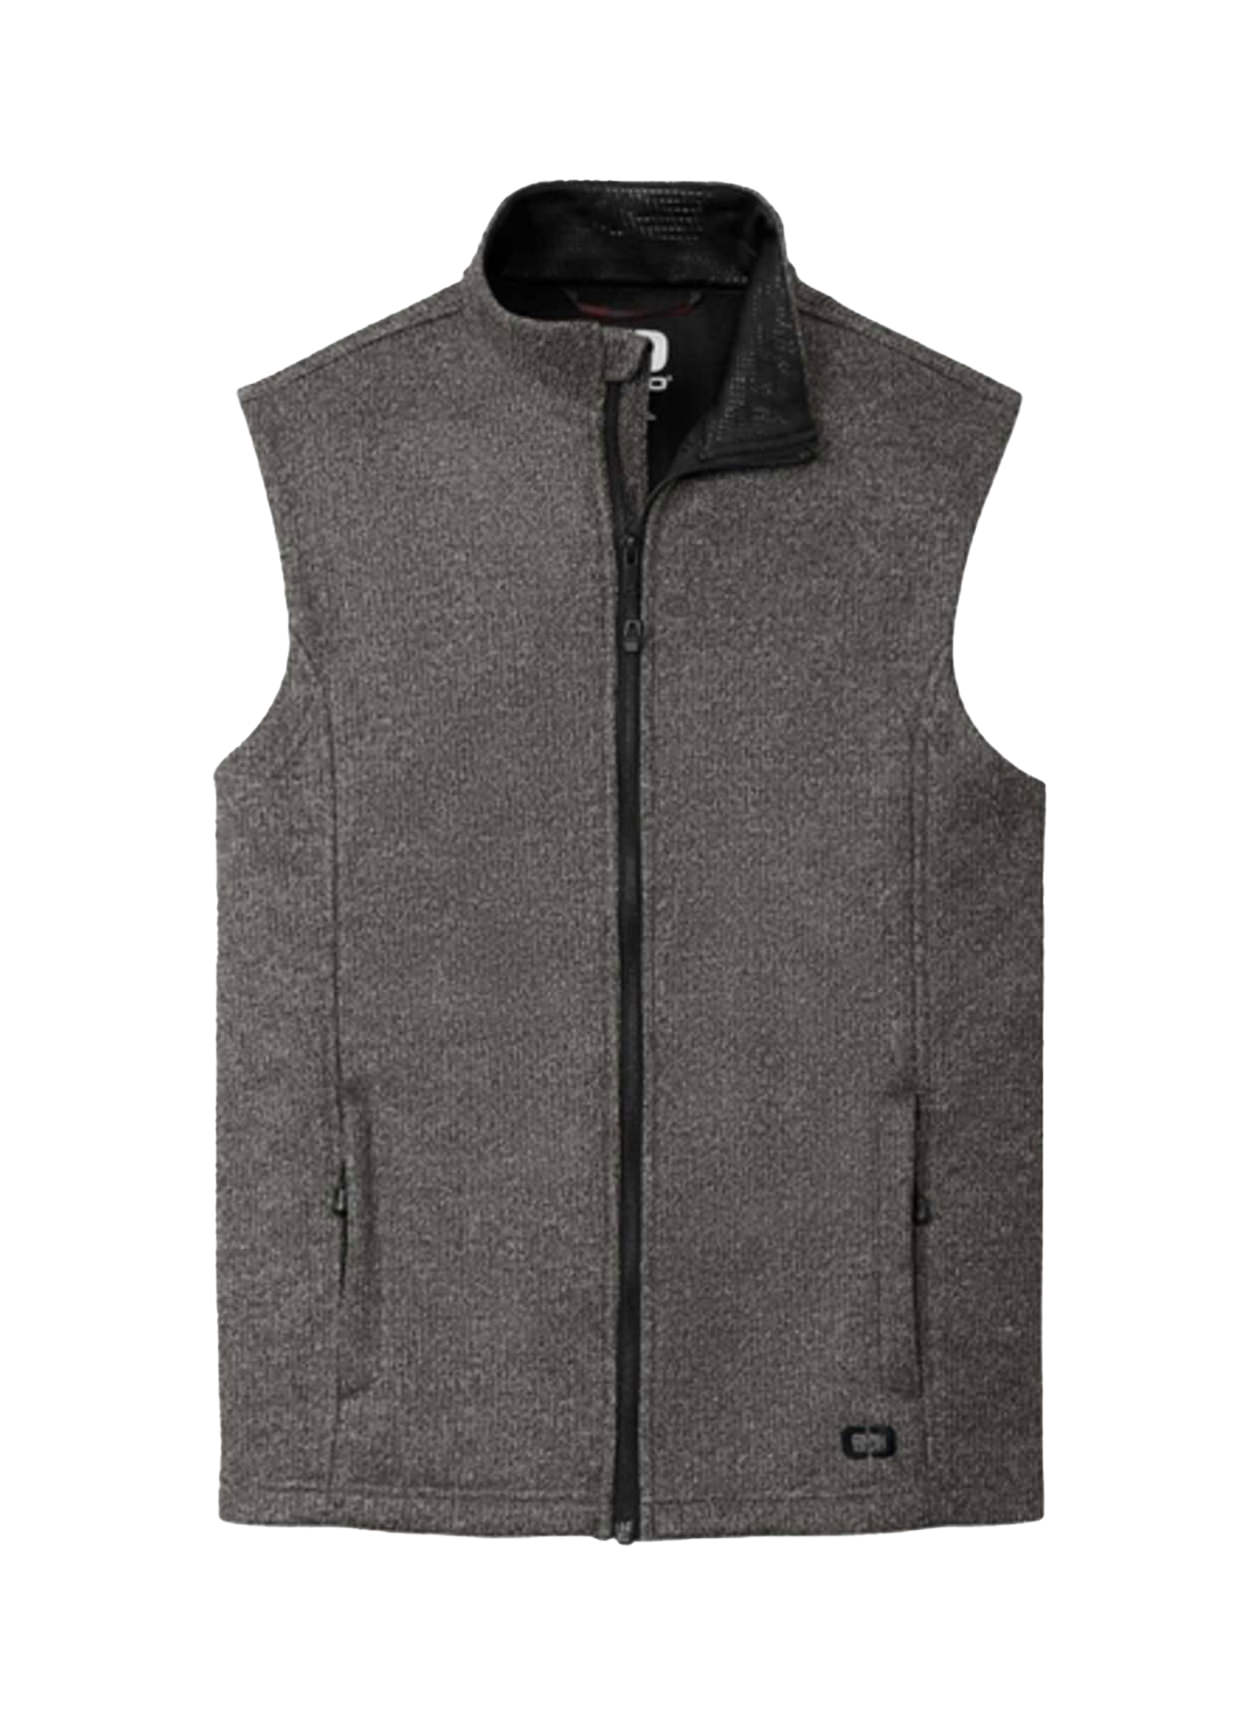 OGIO Men's Diesel Grey Heather Grit Fleece Vest